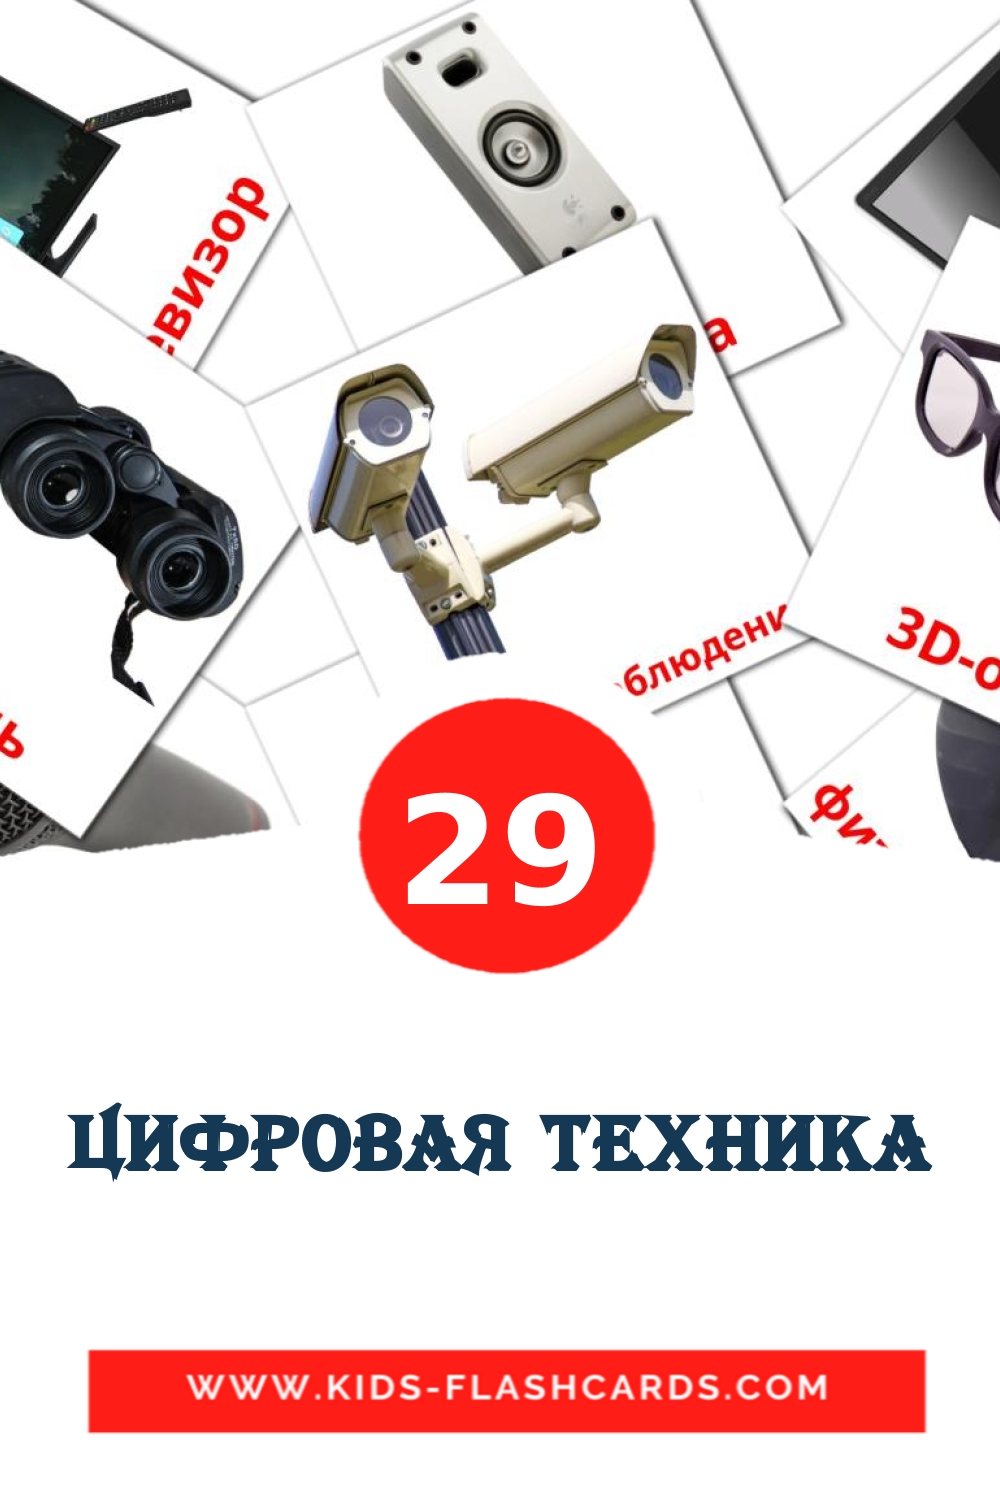 Цифровая техника на русском для Детского Сада (29 карточек)